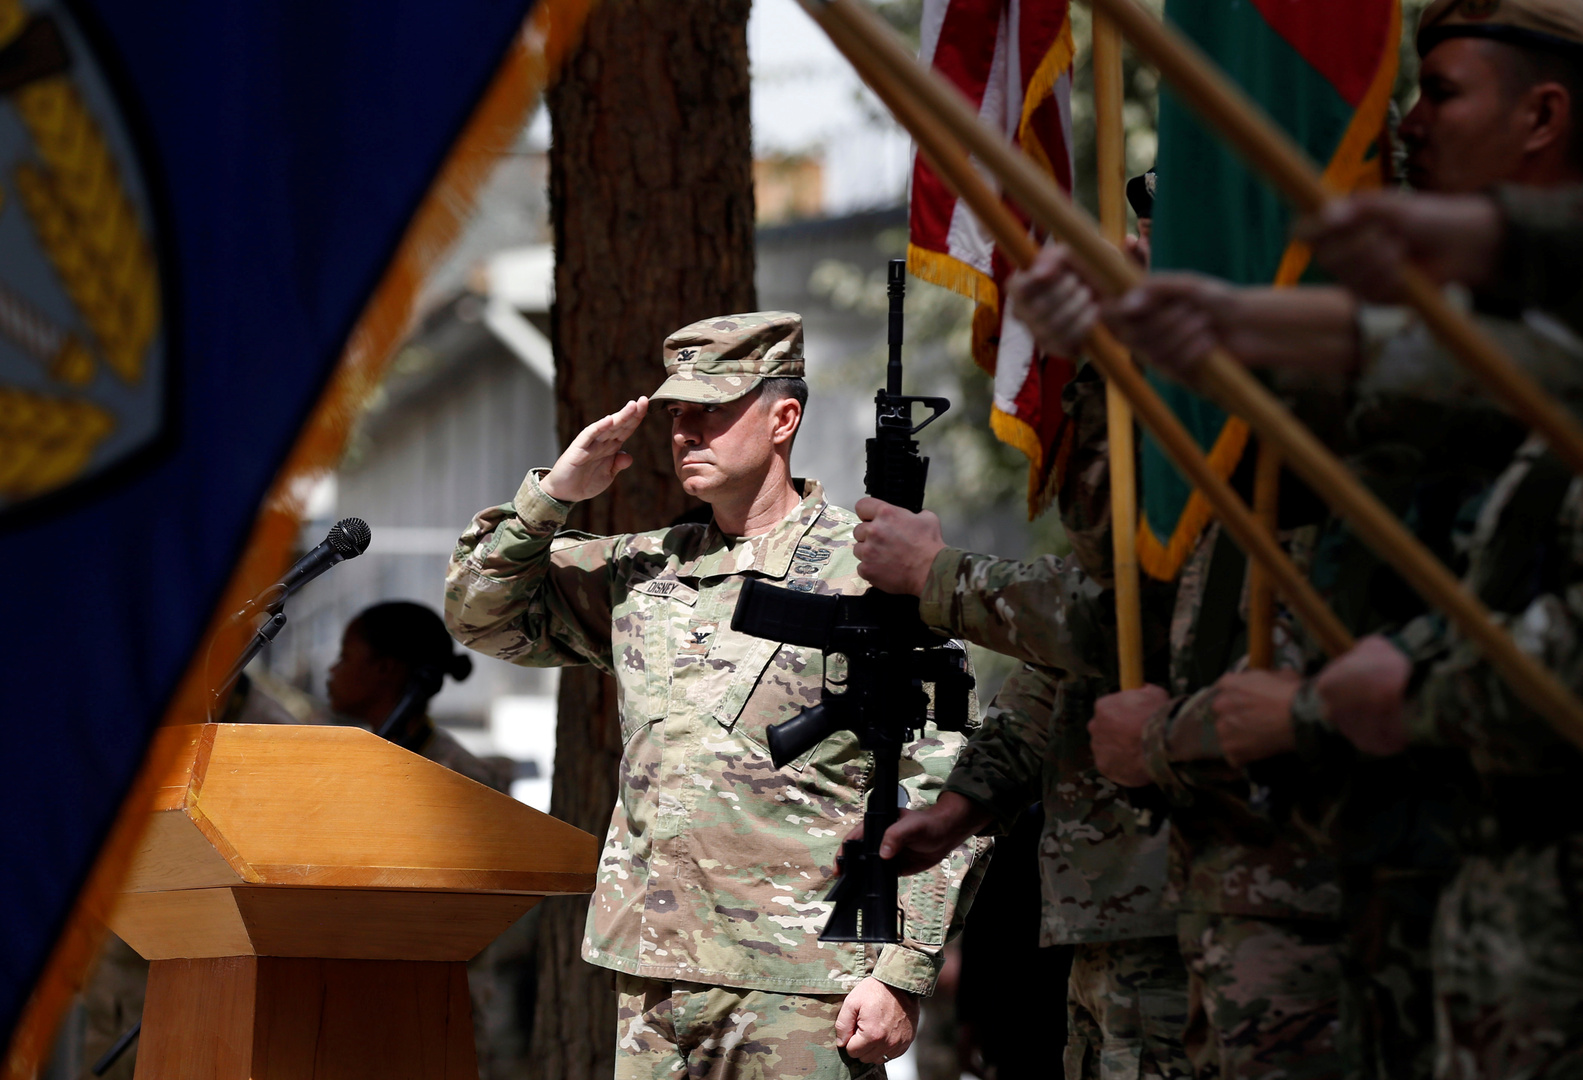 وسائل إعلام: الناتو باشر بسحب قواته من أفغانستان